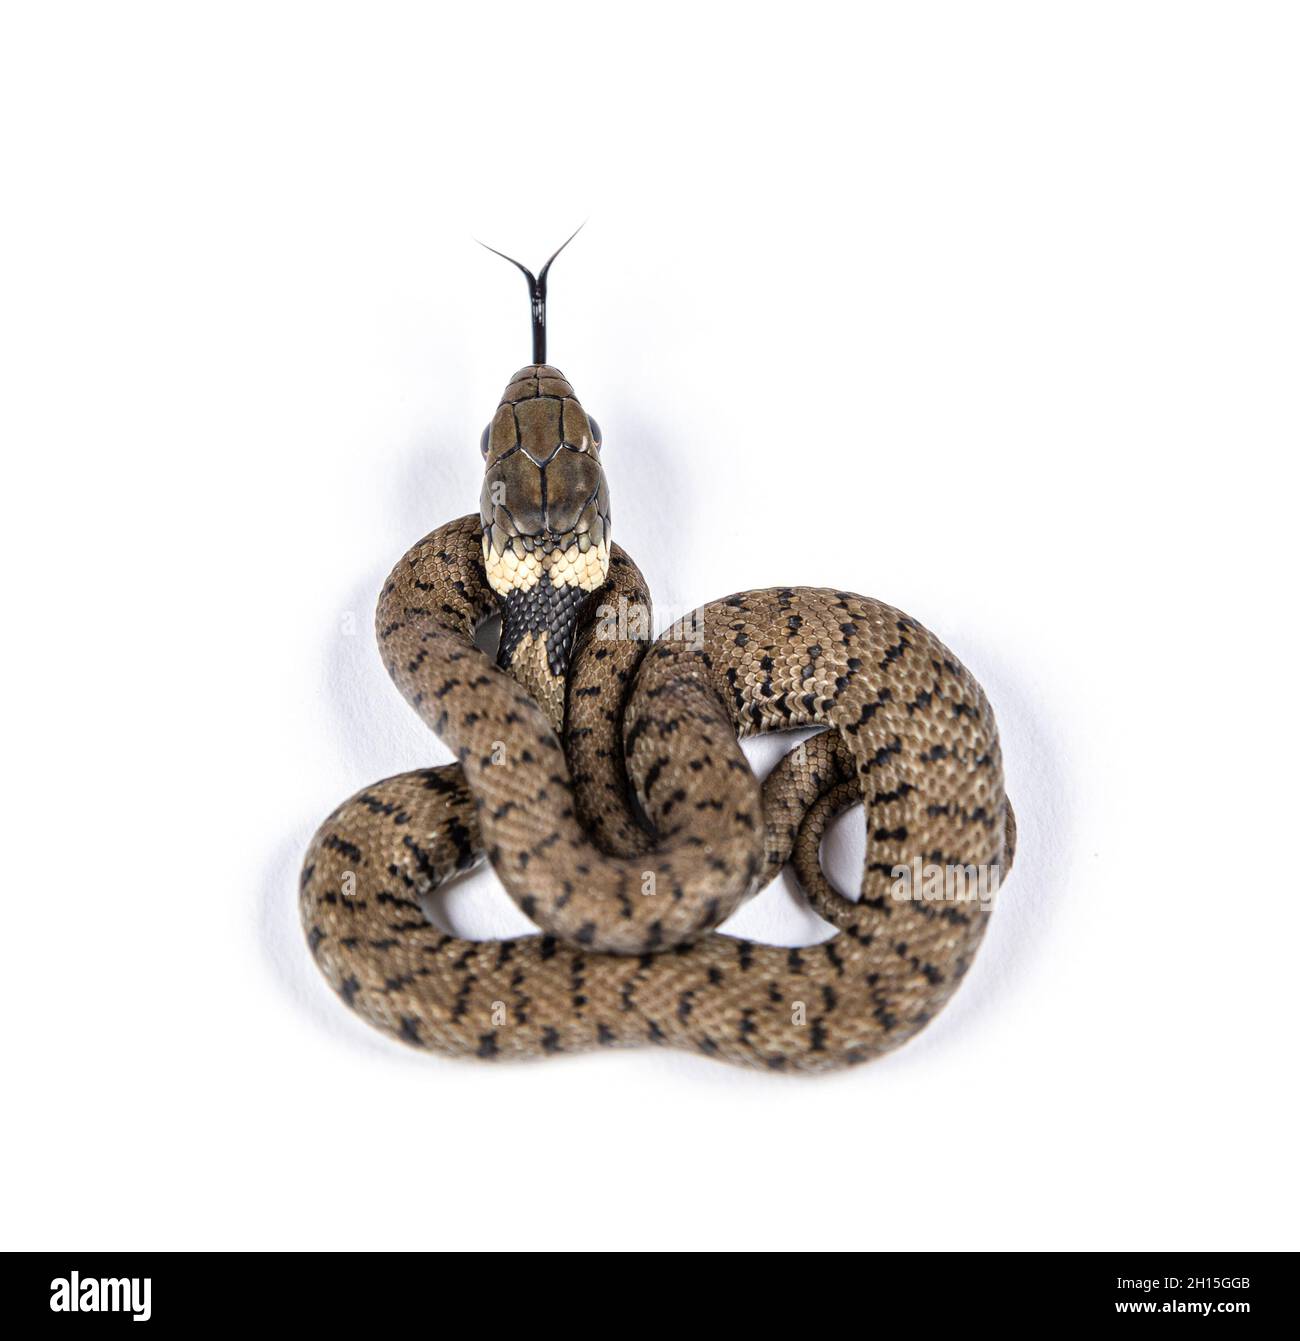 Jeune serpent à herbe, Natrix natrix, isolé sur blanc Banque D'Images